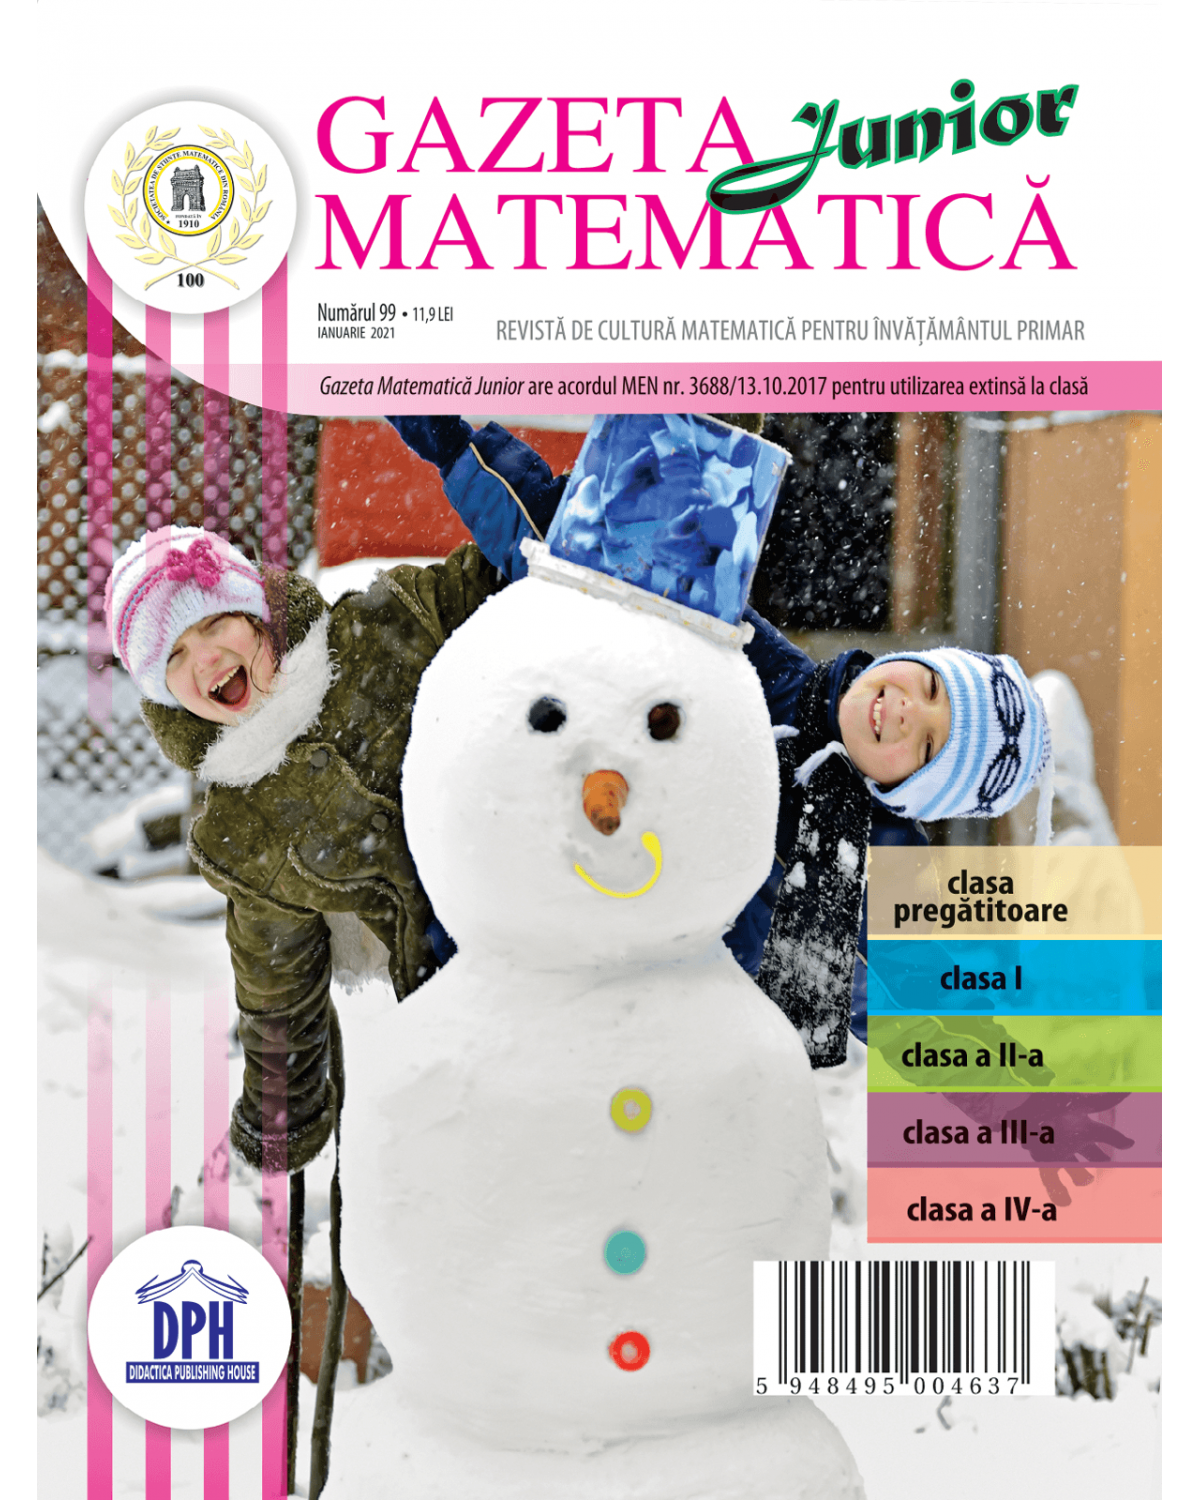 Gazeta Matematica Junior nr. 99 Ianuarie 2021